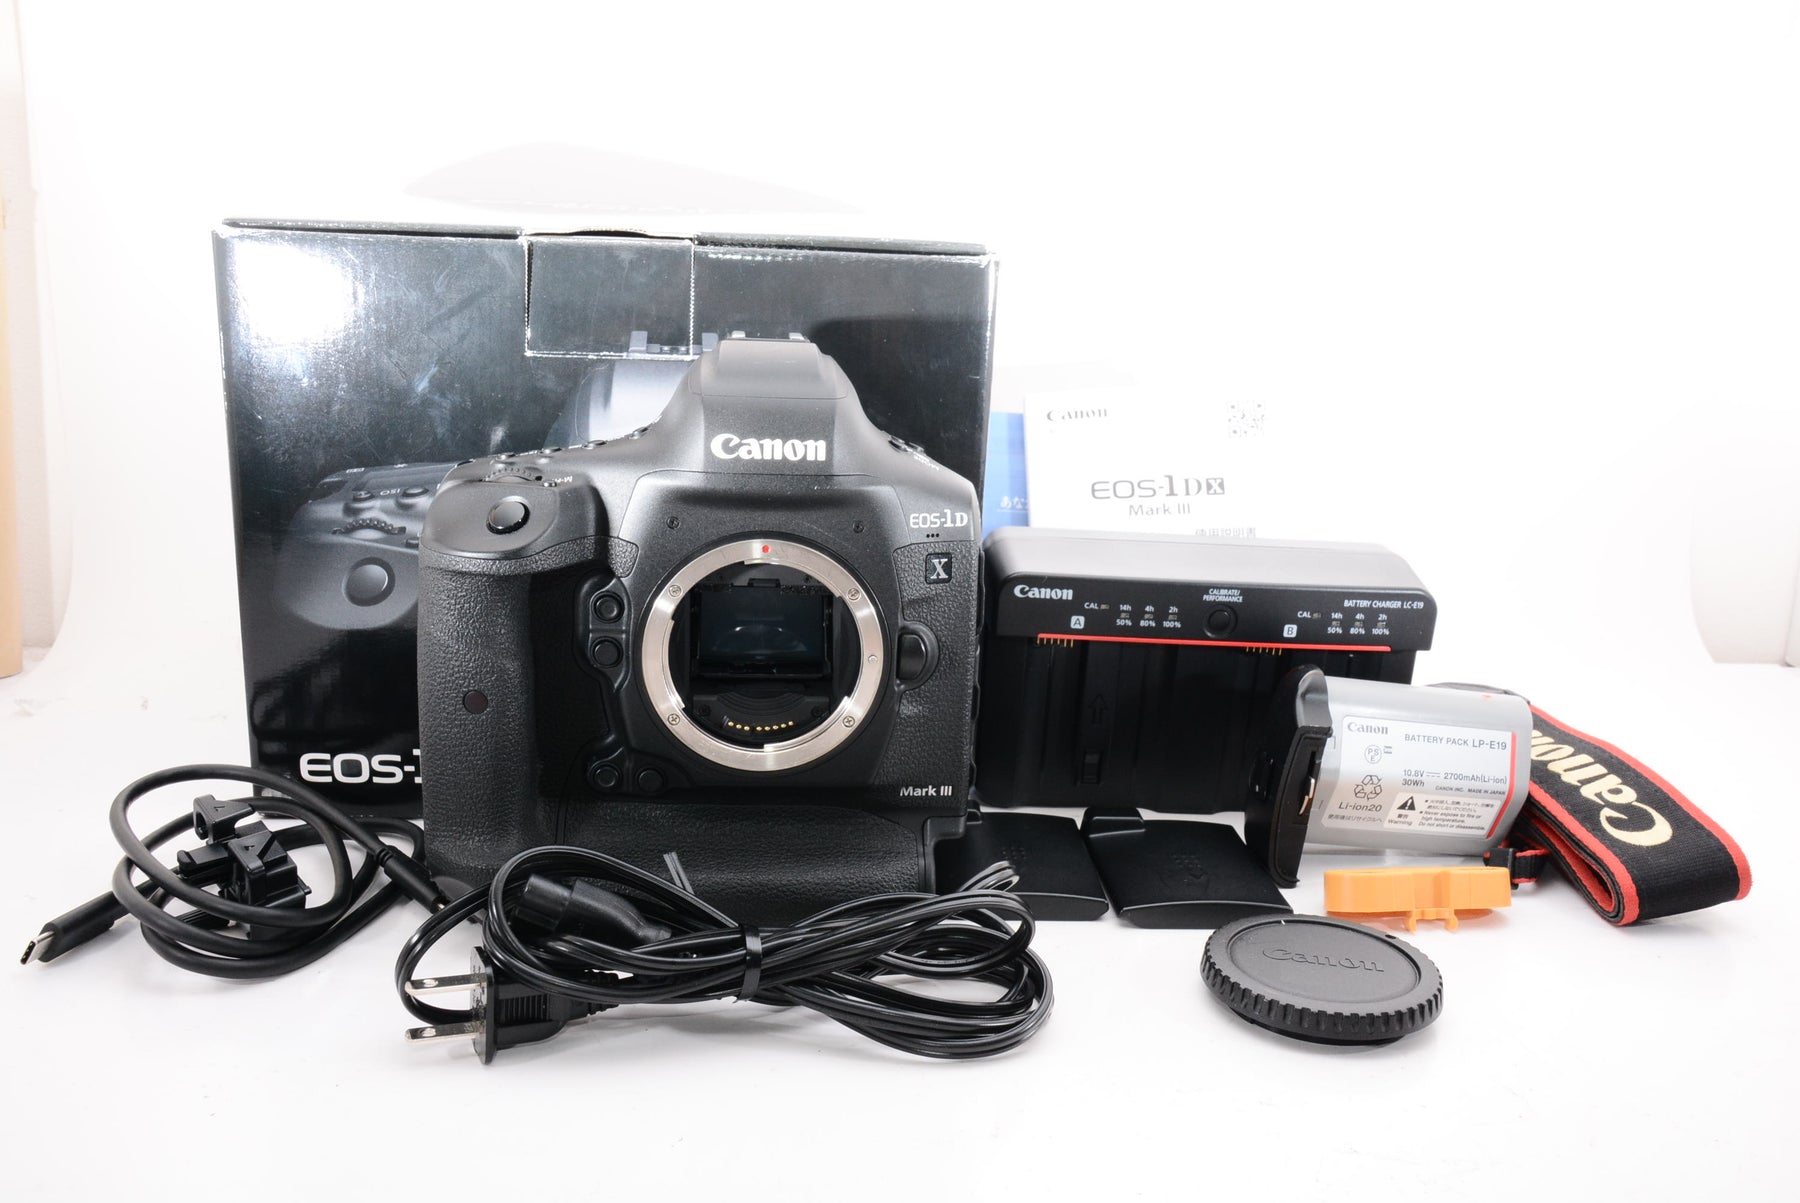 オススメ】Canon デジタル一眼レフカメラ EOS-1D X Mark III ボディー EOS-1DXMK3